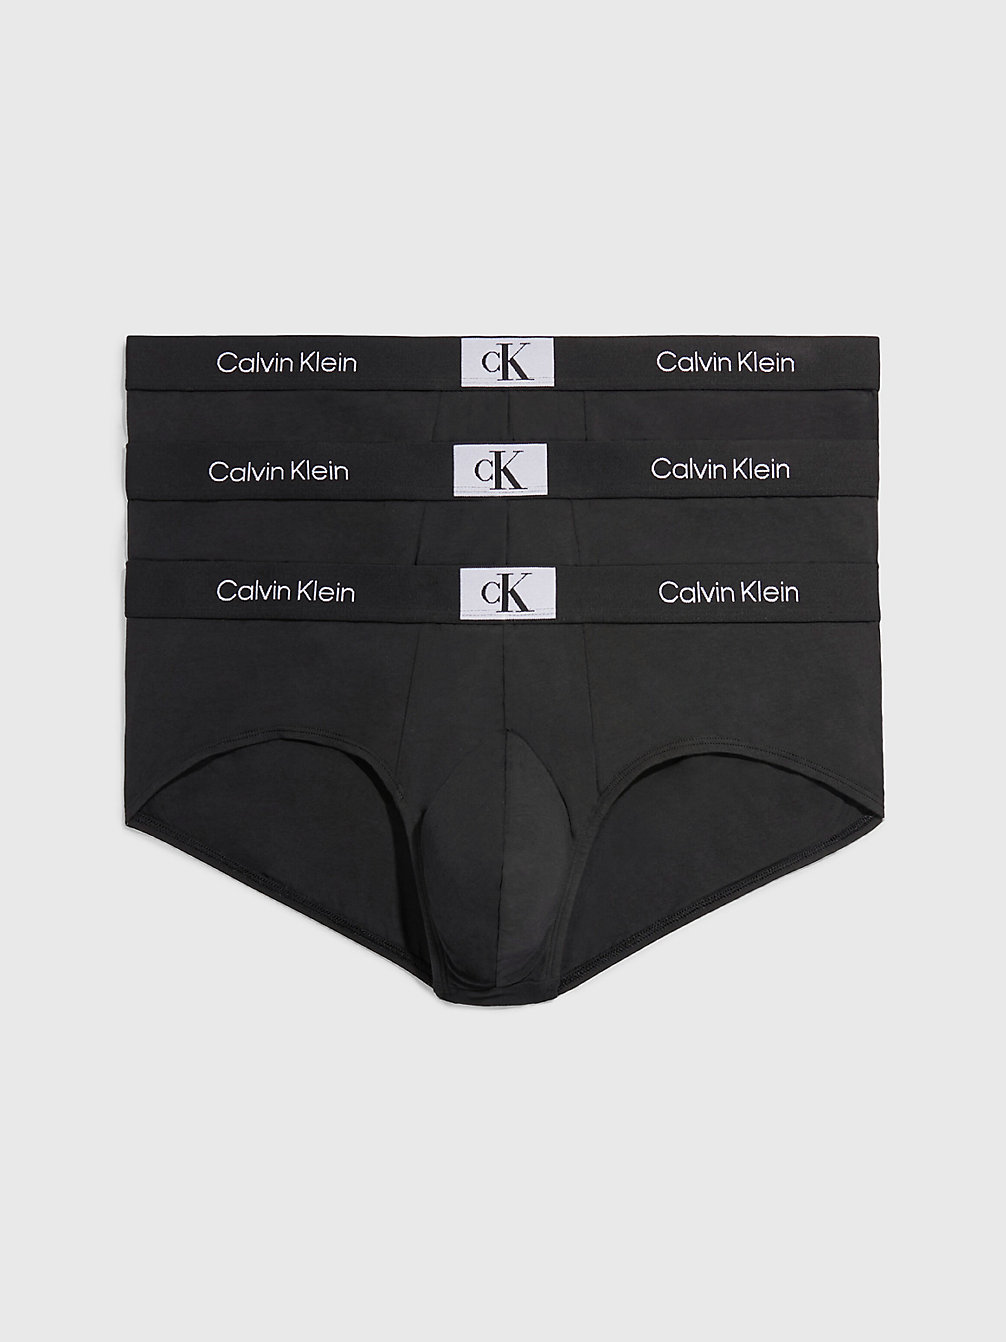 BLACK/ BLACK/ BLACK Grote Maat 3-Pack Slips - Ck96 undefined heren Calvin Klein